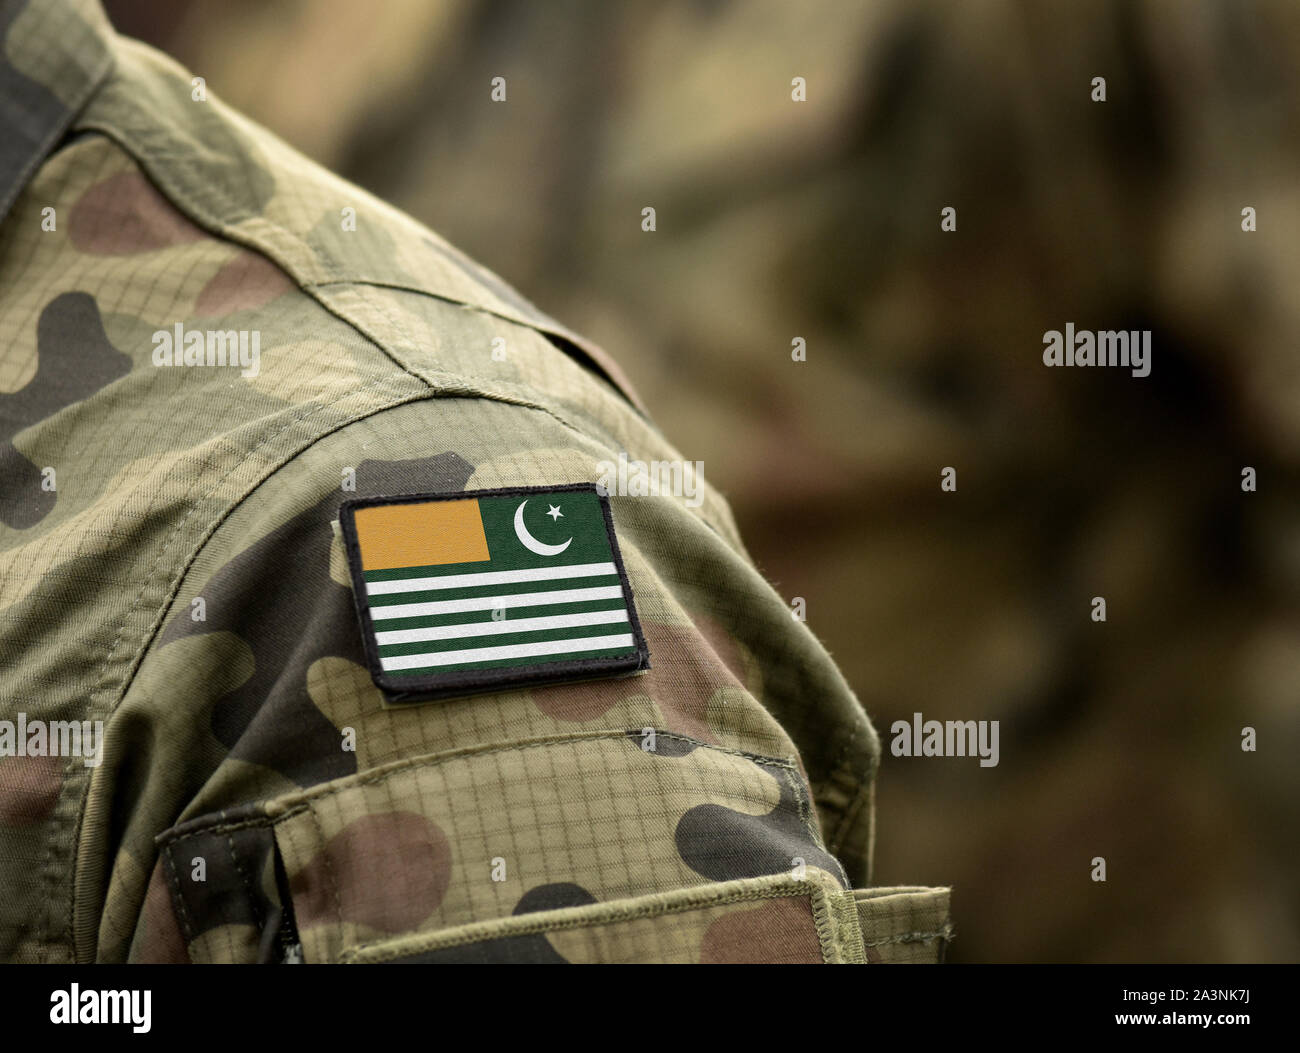 Pavillon de l'Azad Cachemire sur l'uniforme militaire. Les troupes de l'armée, soldat, (collage). Banque D'Images